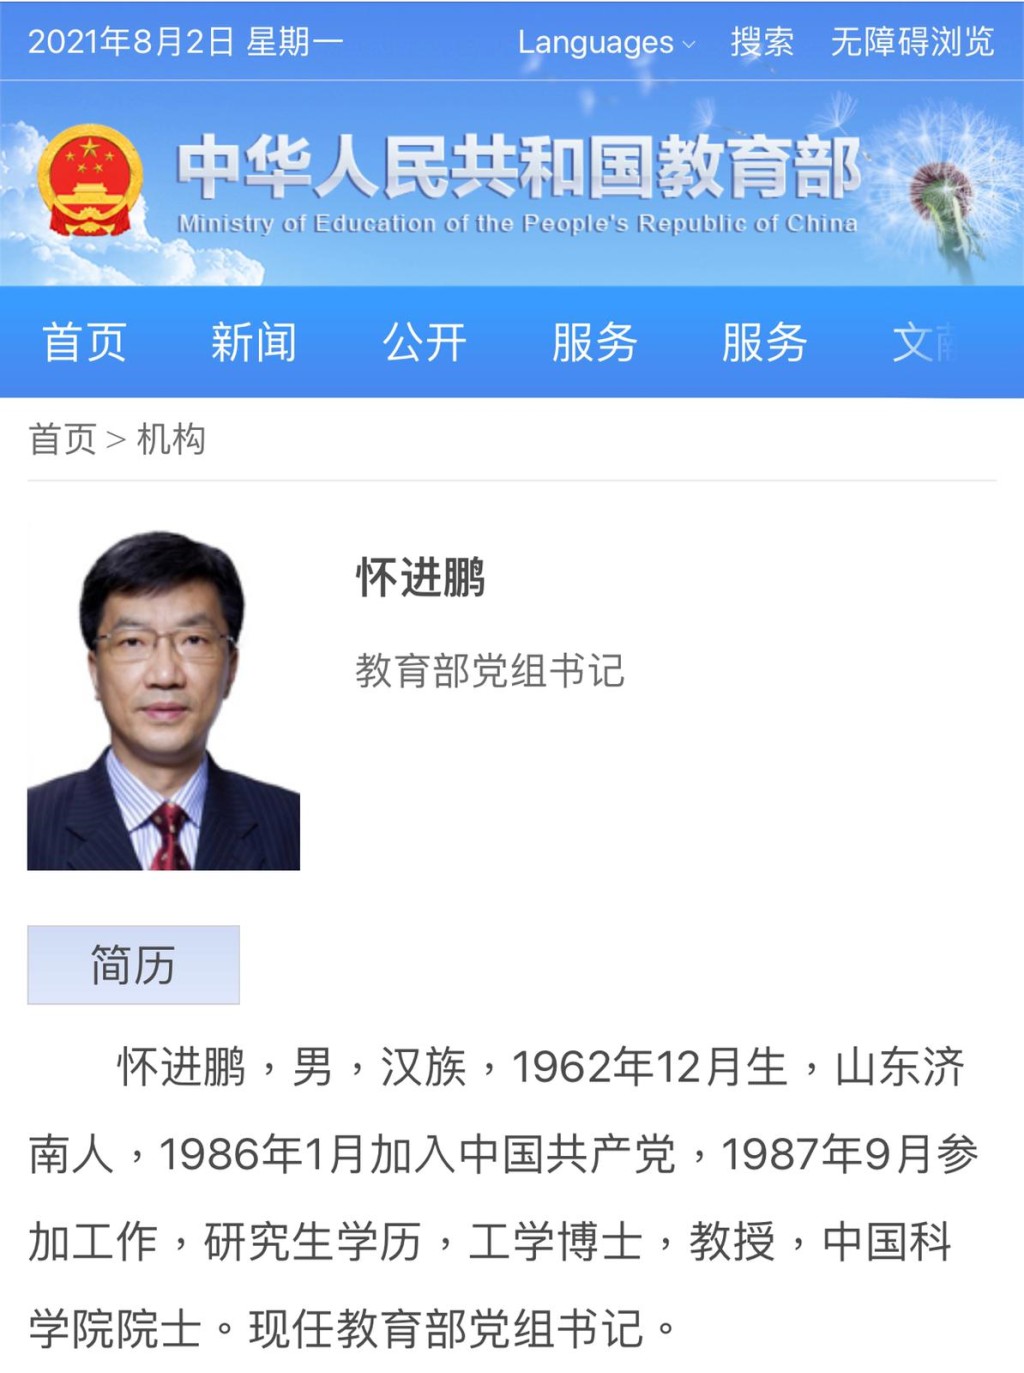 官網證實懷進鵬擔任教育部黨組書記。